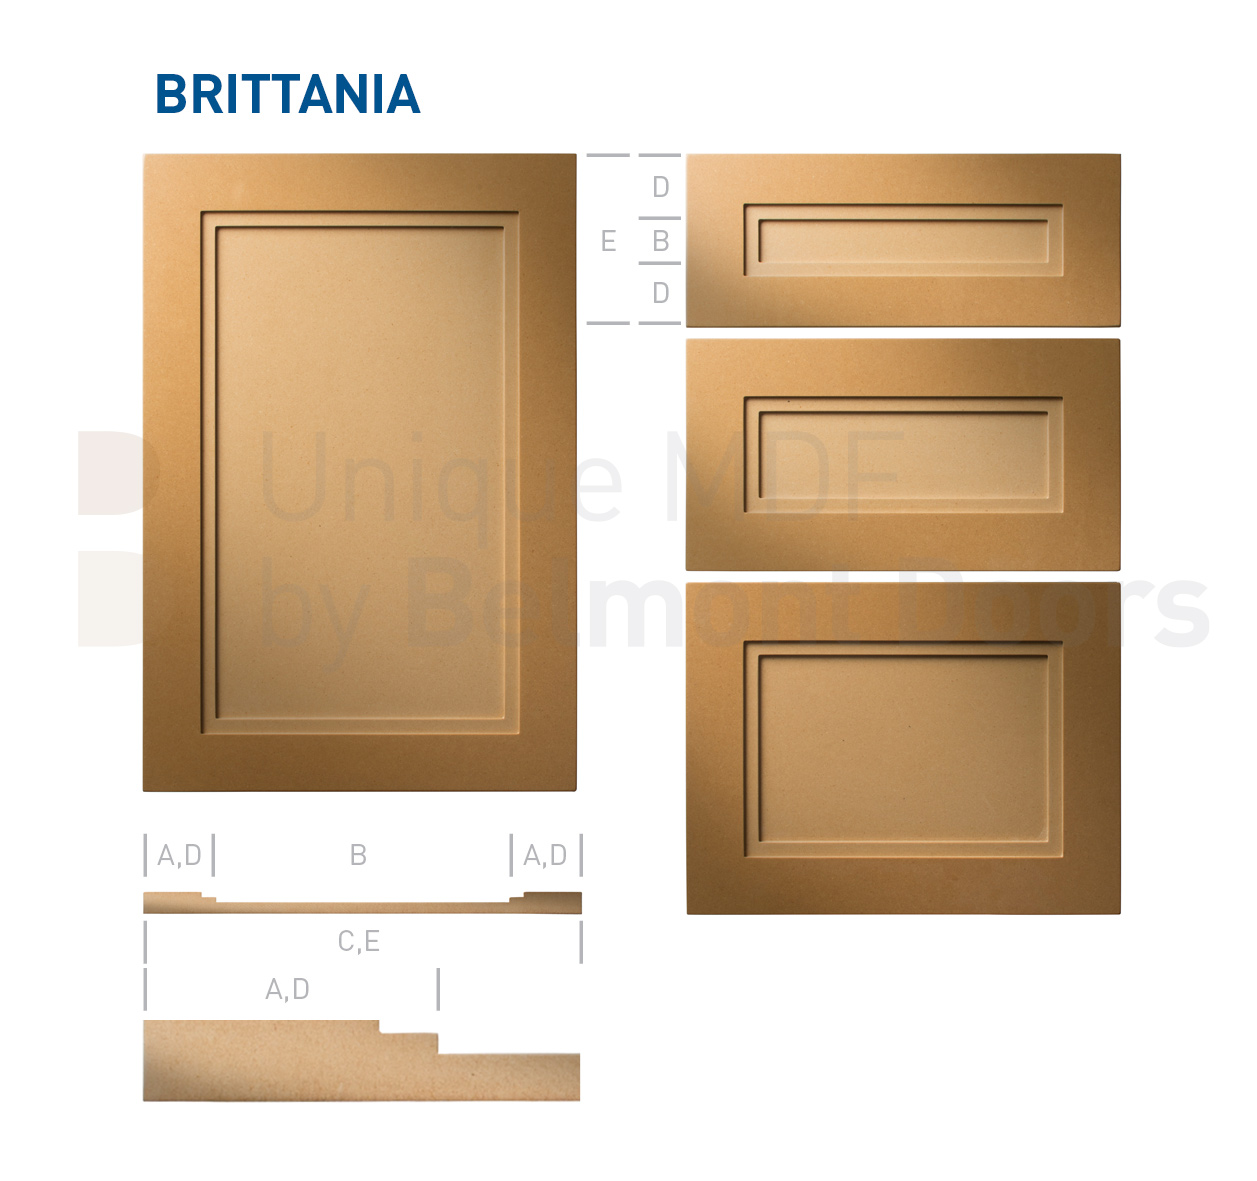 Brittannia-Shaker-MDF-Doors-Flat Panel Kitchen Cabinet Doors Drawers by BelmontDoors.com